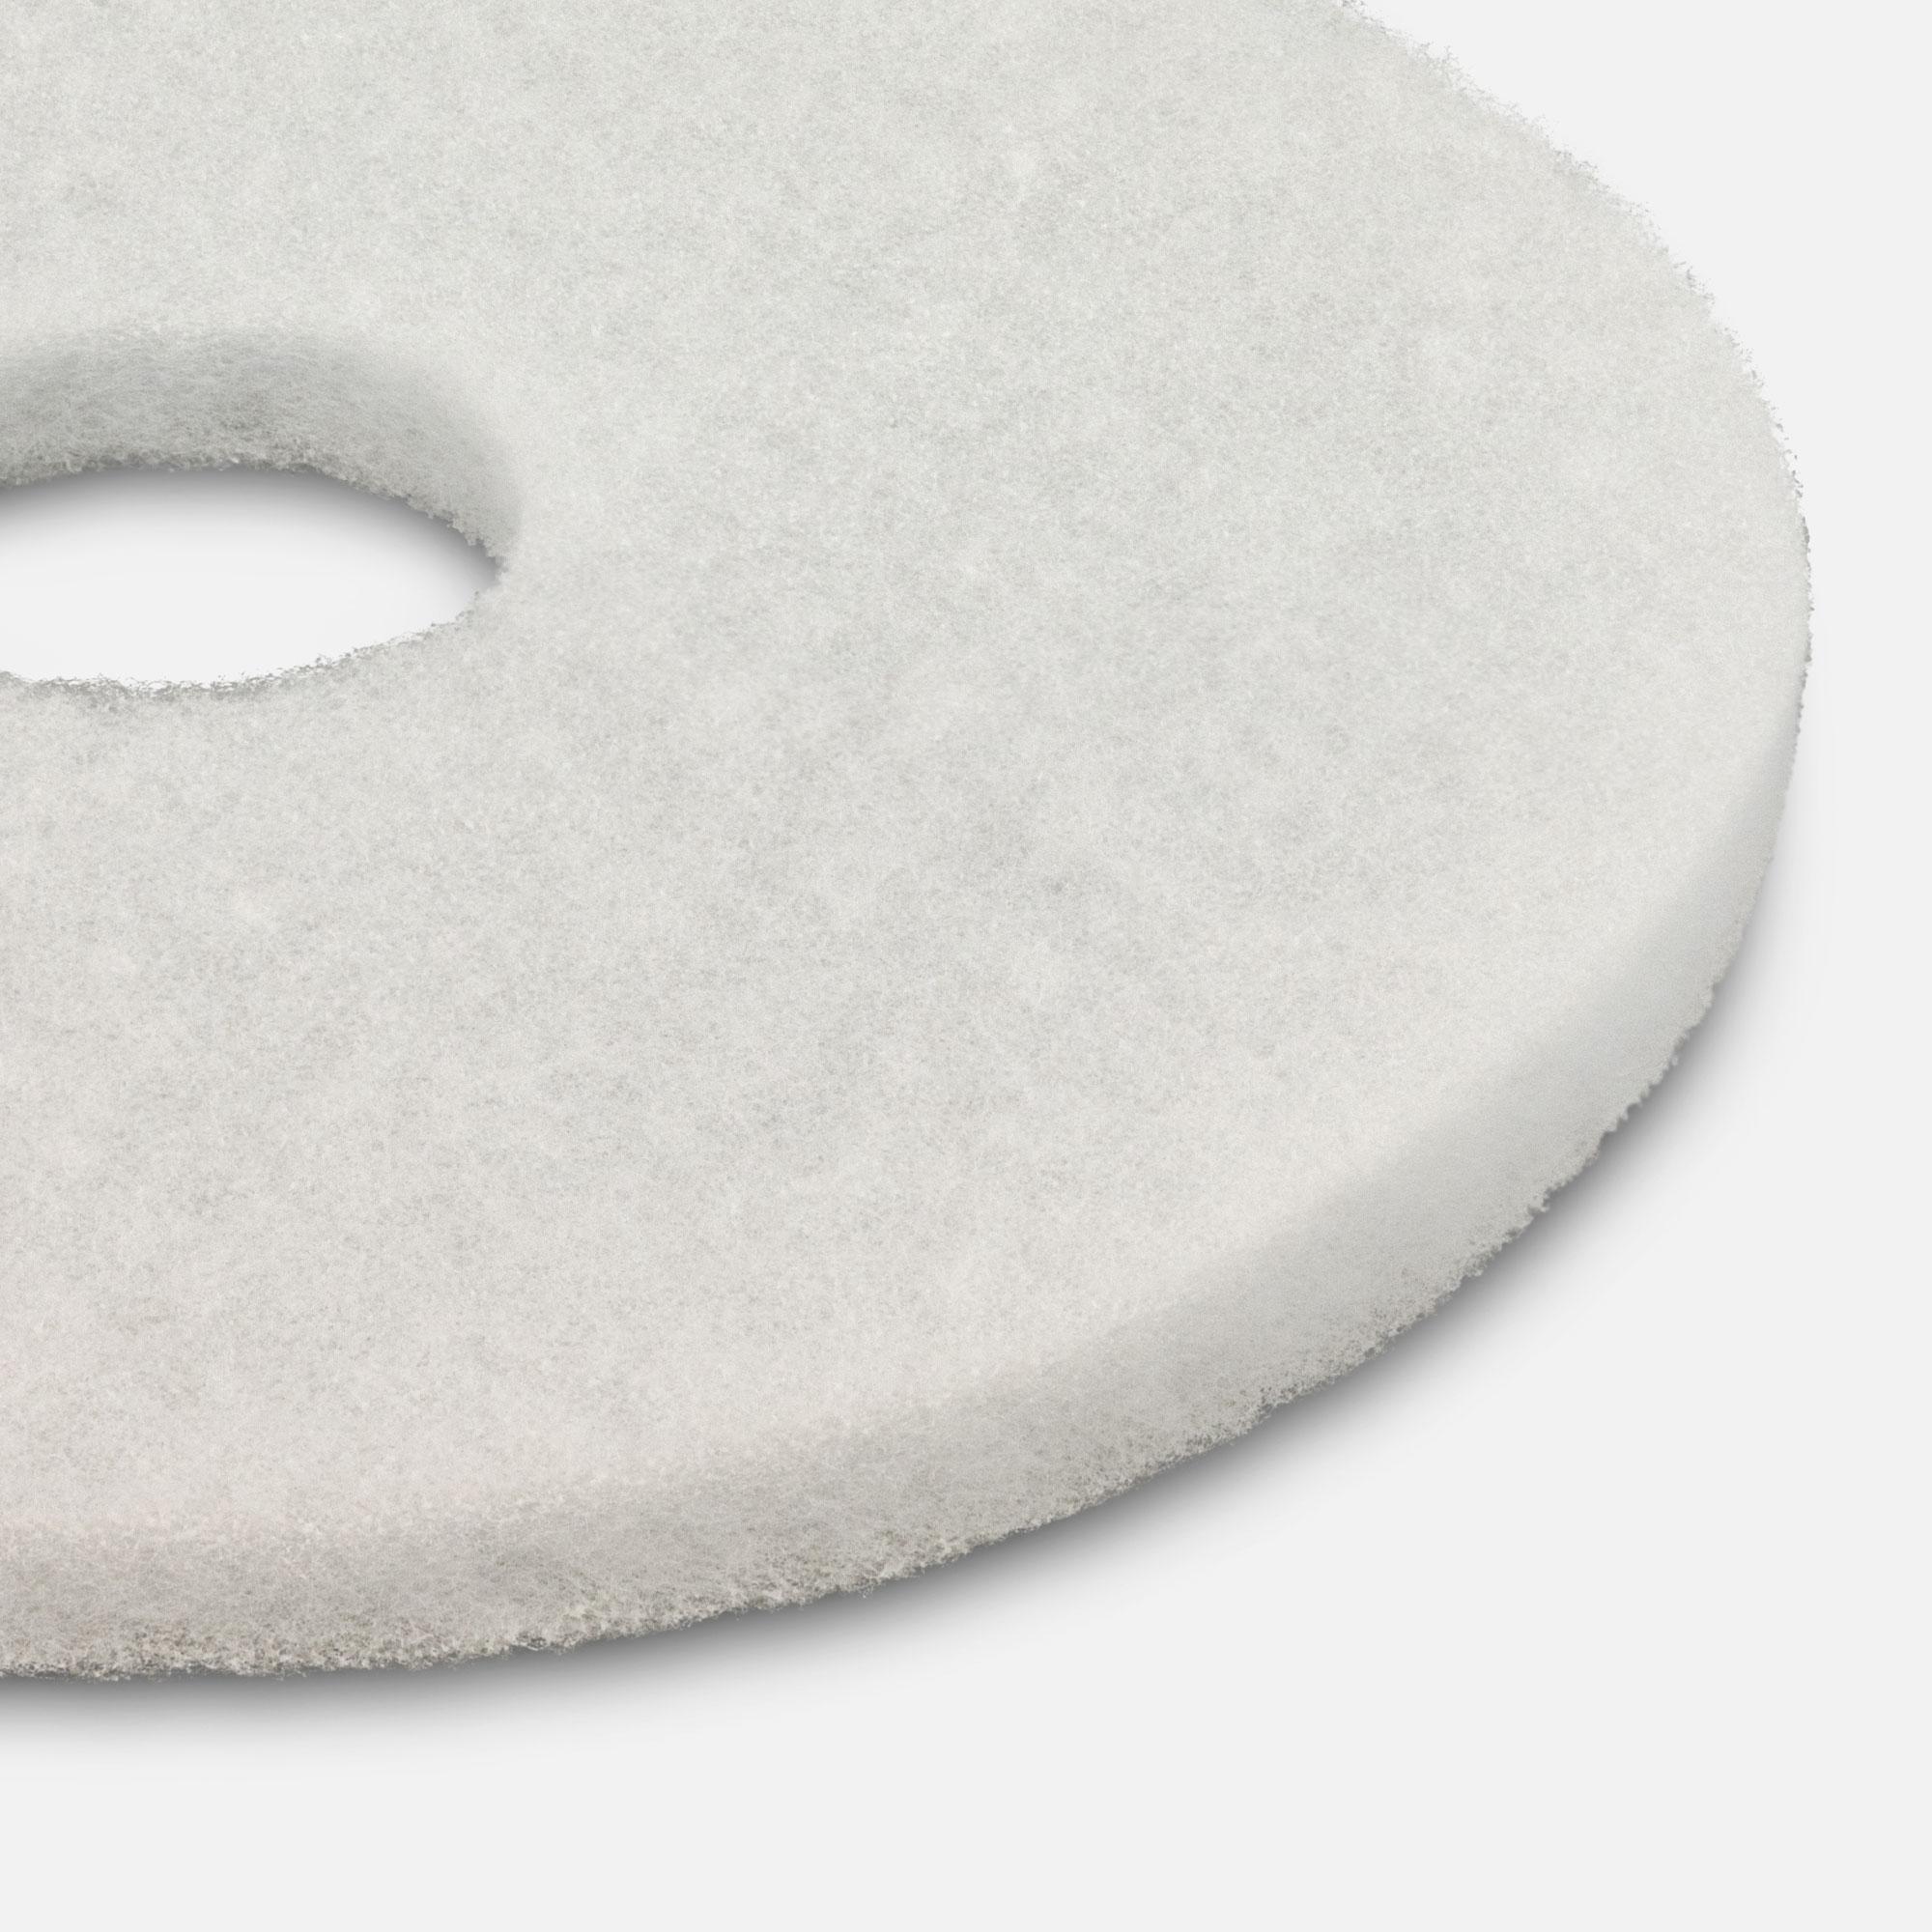 Polierpad weiss Durchmesser 407 mm zum polieren geeignet